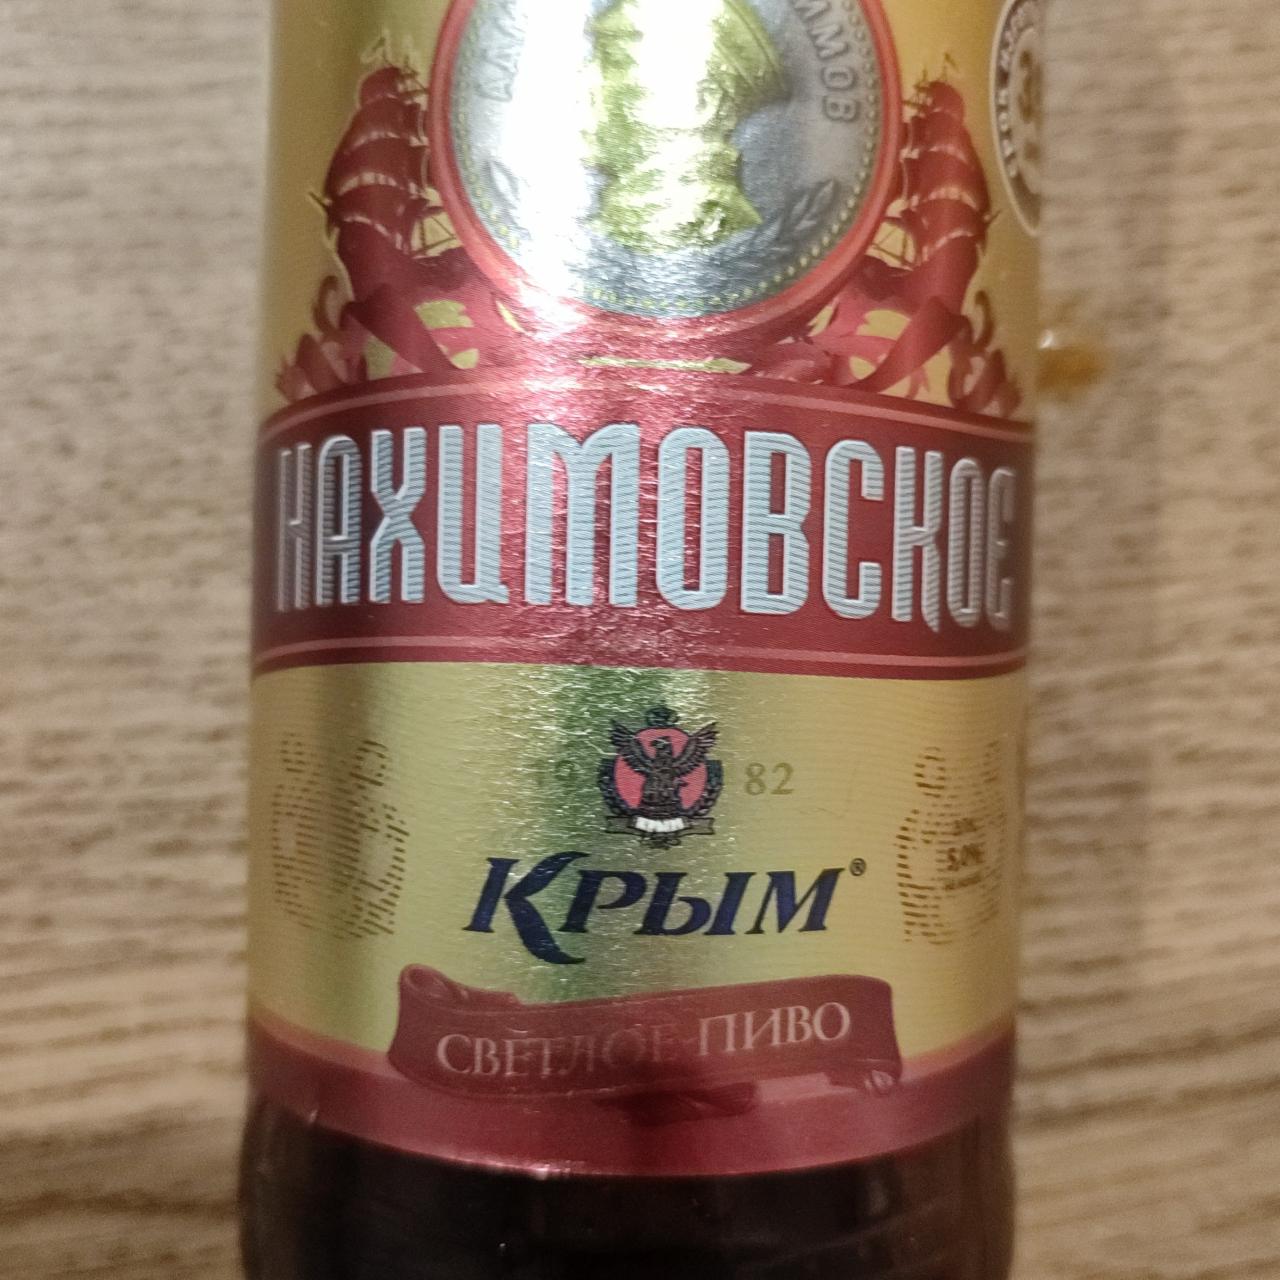 Фото - Светлое пиво Нахимовское Крым